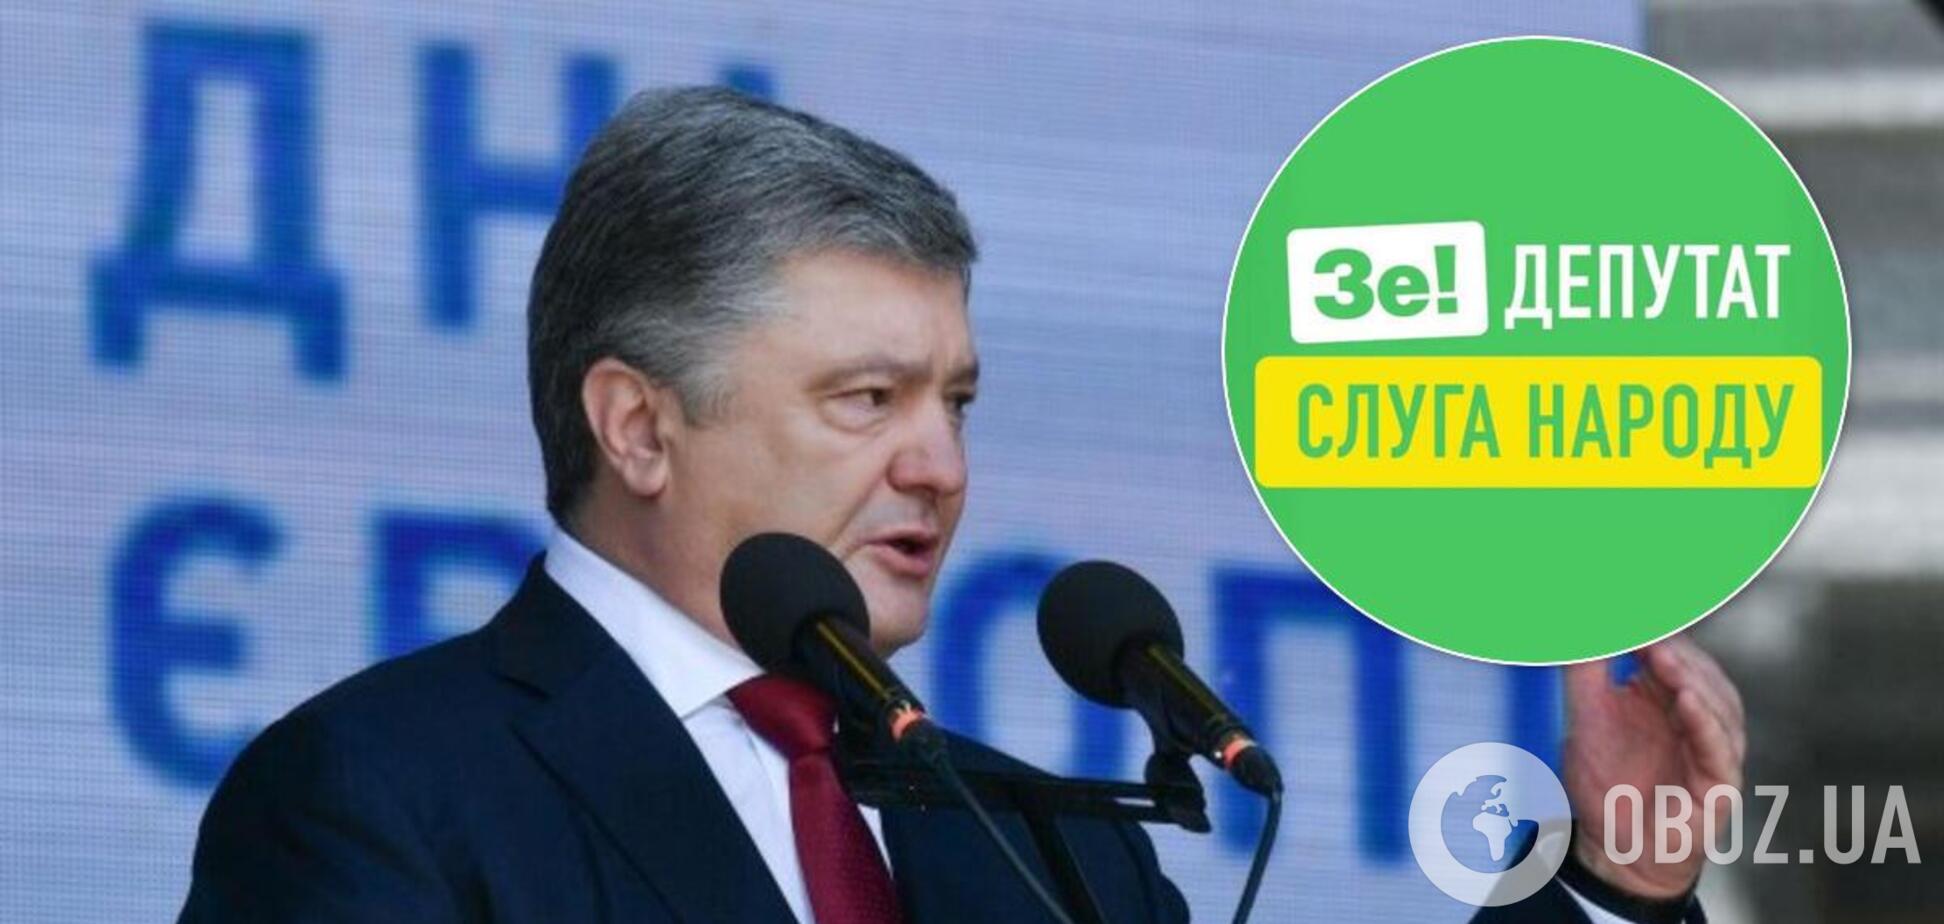 Опитування свідчить, що Порошенко та 'ЄС' наростили підтримку серед українців, 'Слуга народу' здає позиції